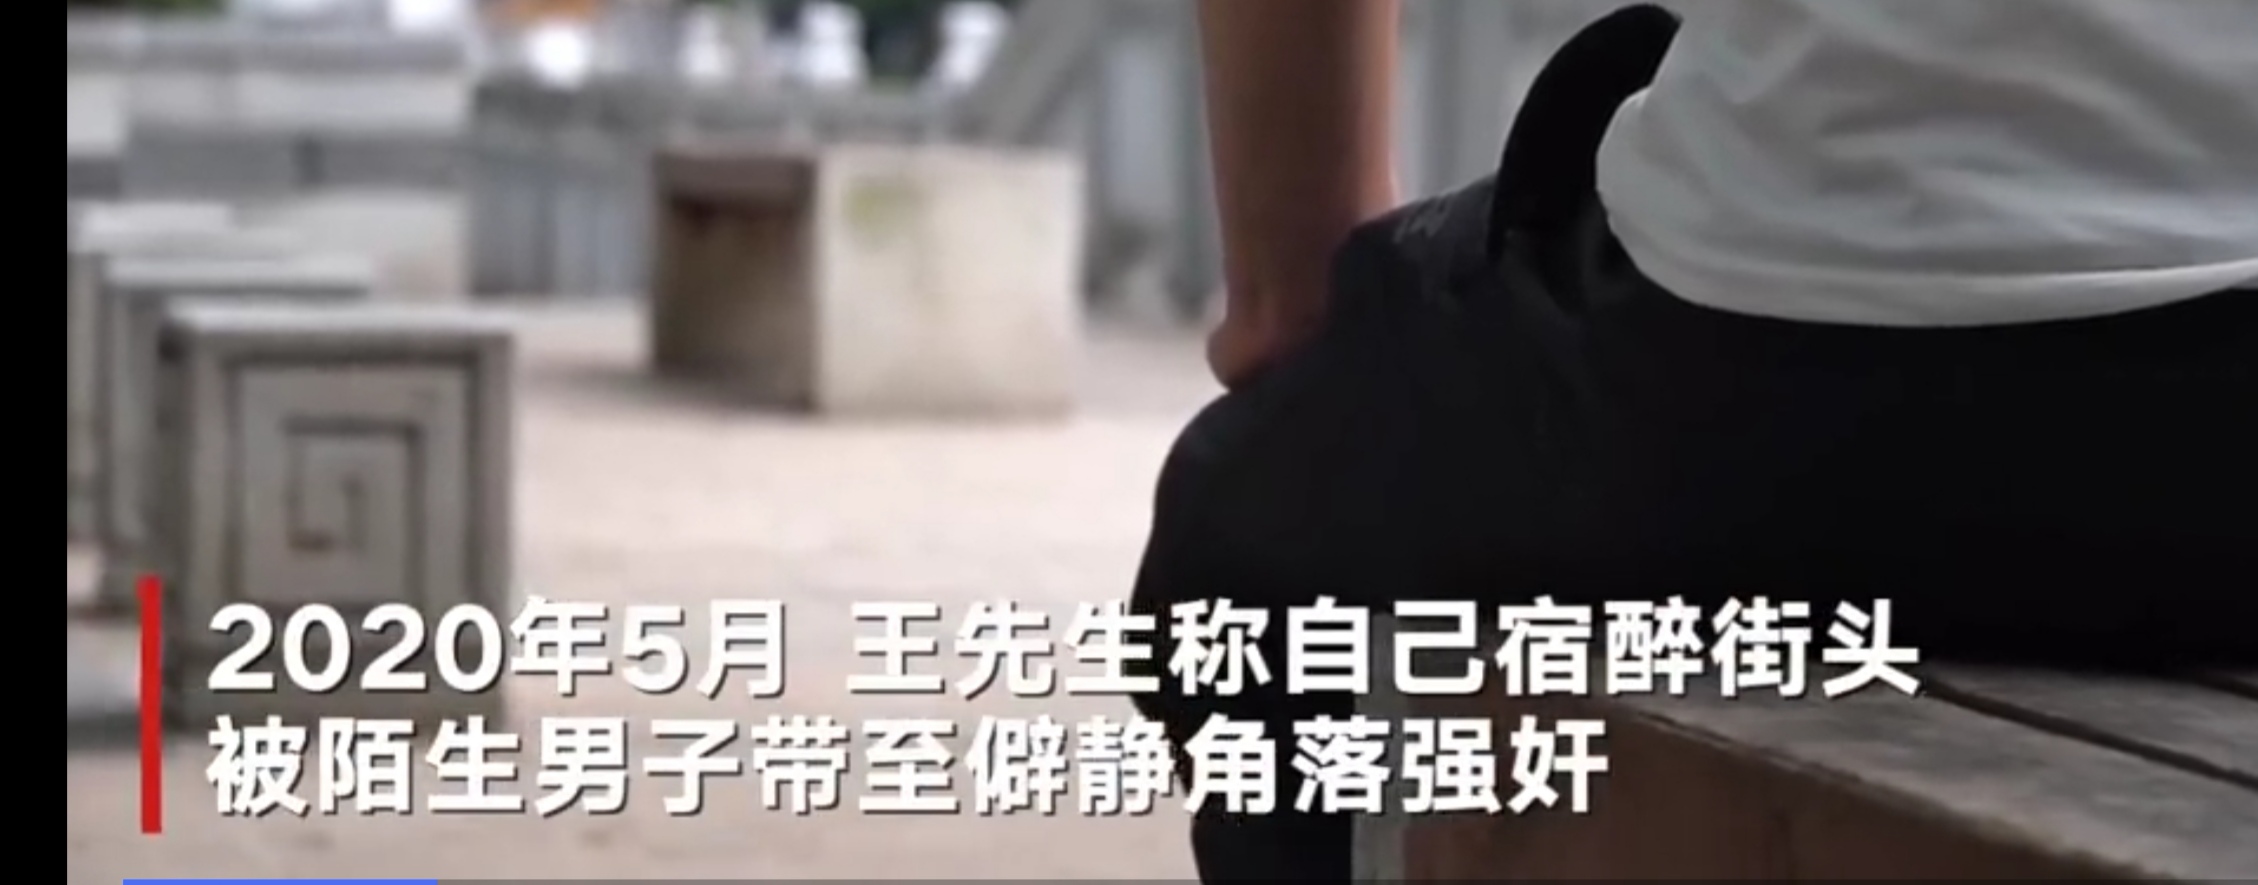 南京一小伙喝醉后遭陌生男子强奸后抑郁，犯罪嫌疑人9月被取保候审